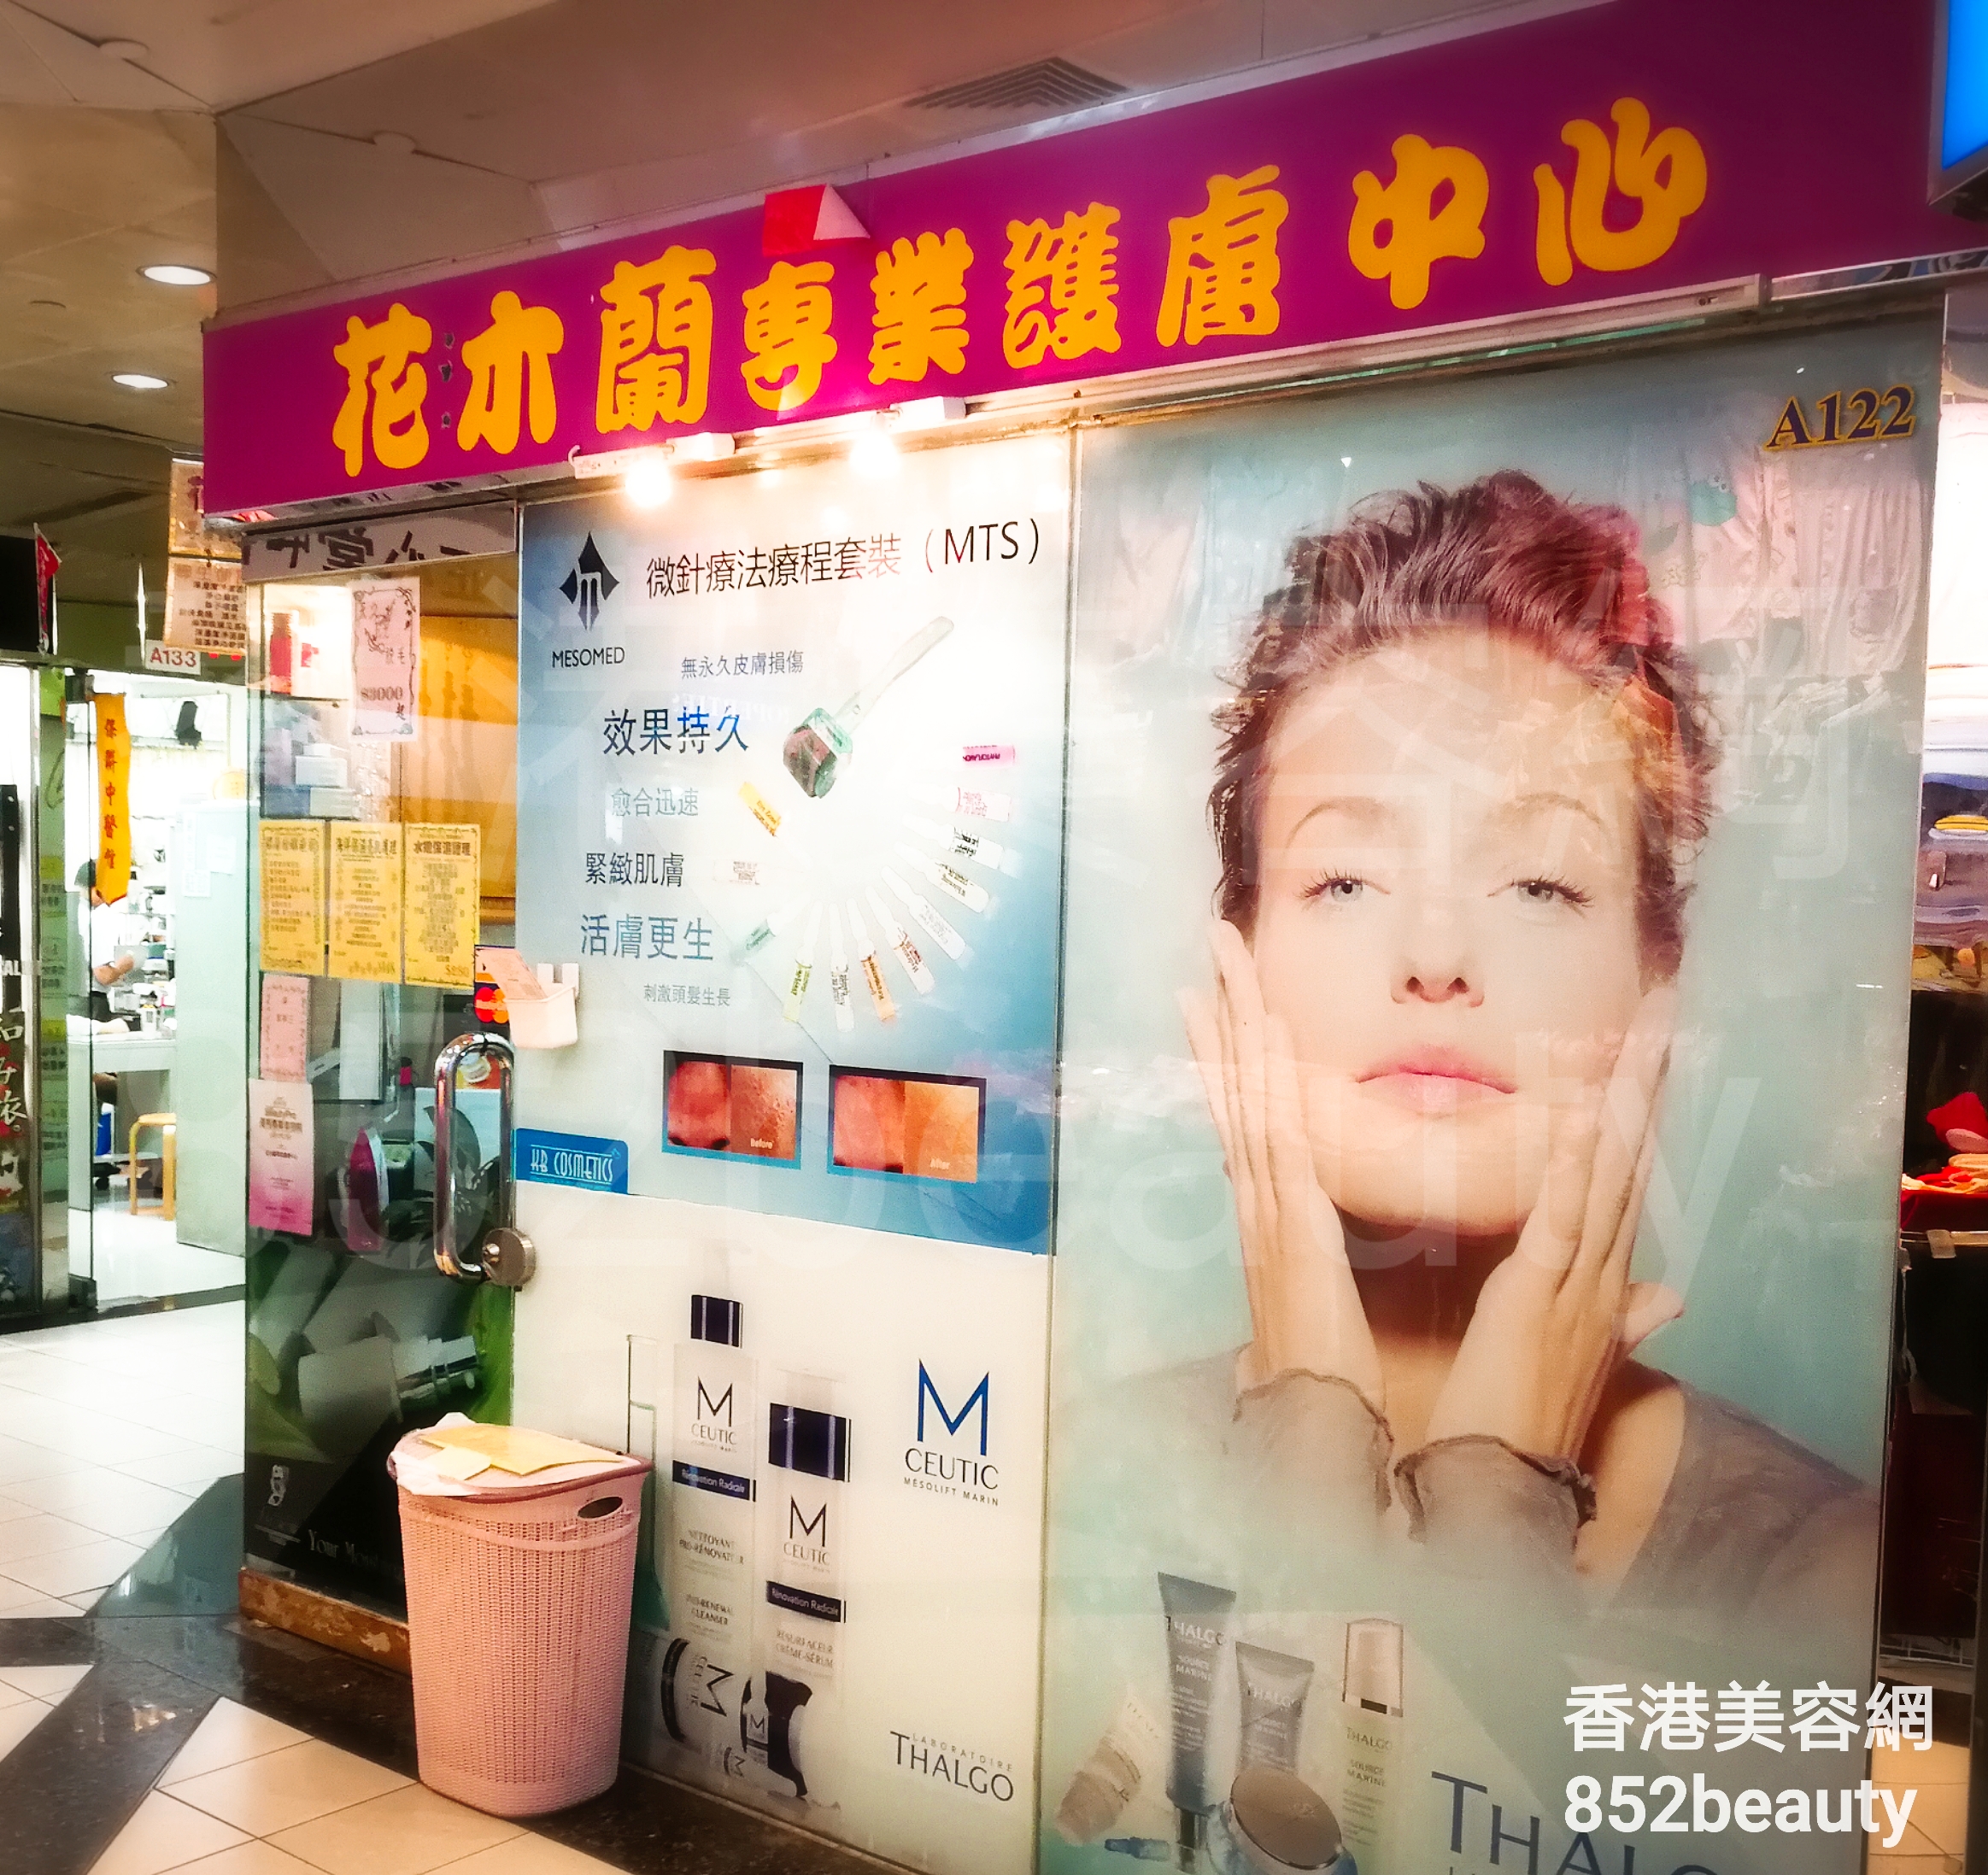 脫毛: 花木蘭 專業護膚中心